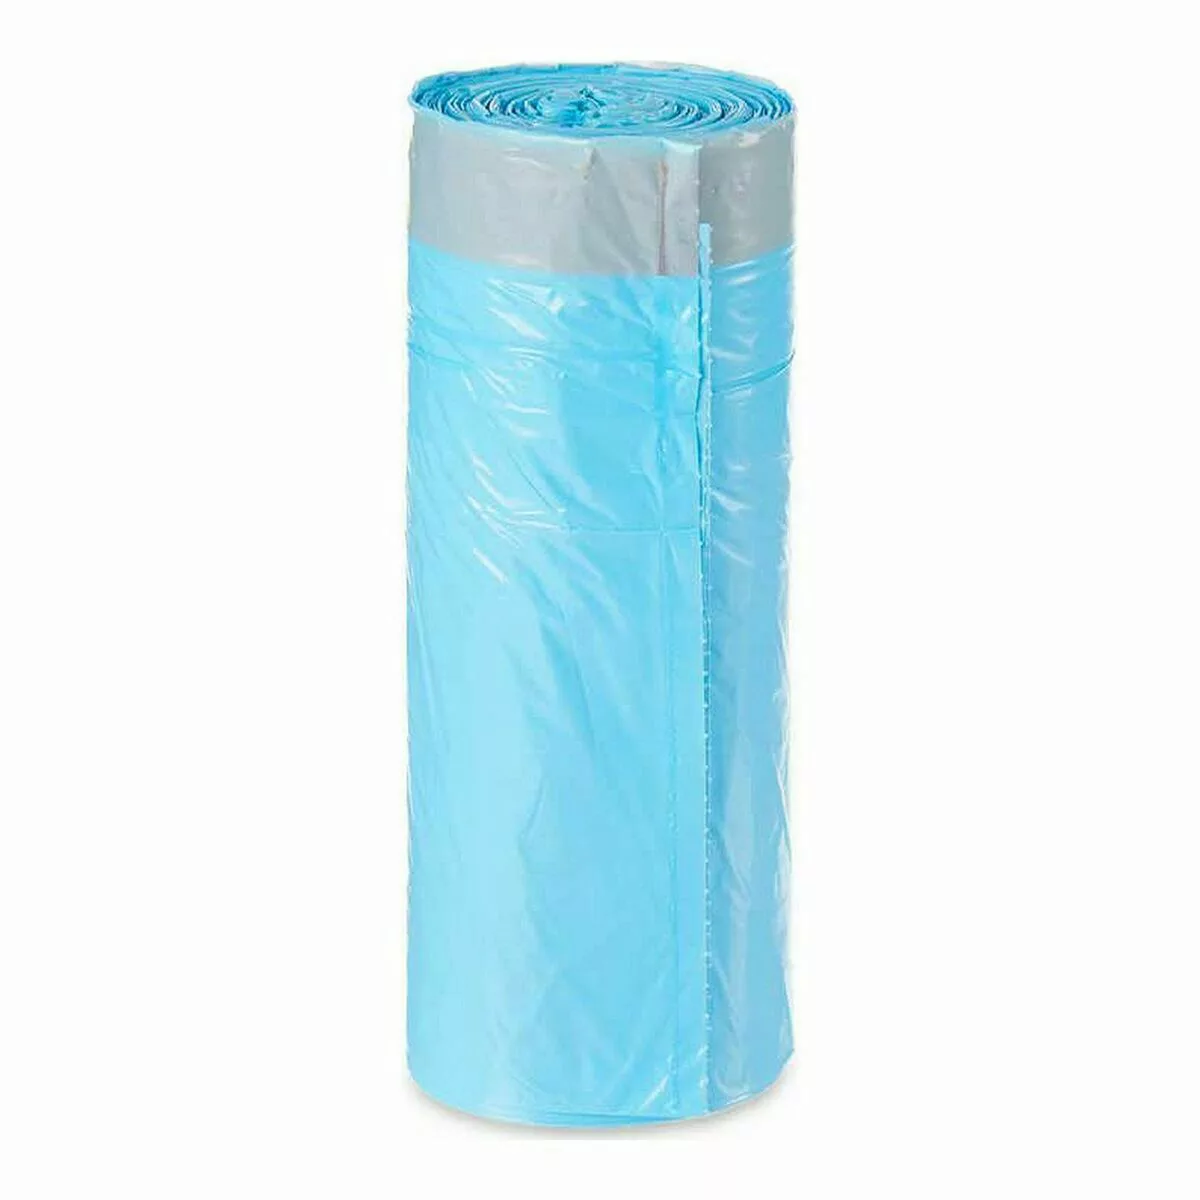 Müllsäcke Blau Polyäthylen 15 Stück (30 L) günstig online kaufen